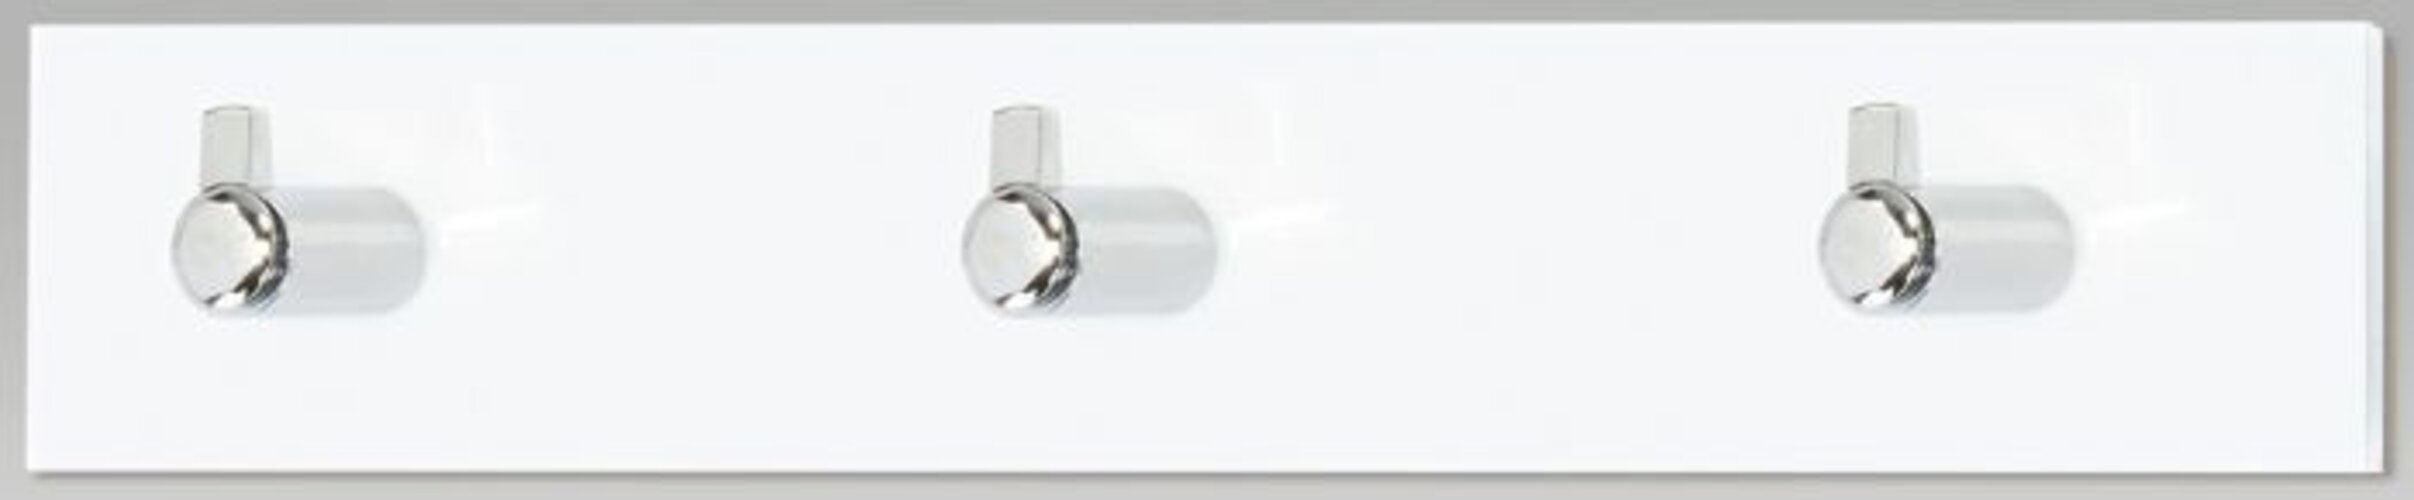 Nástenný vešiak 3 háčiky, biely akrylát